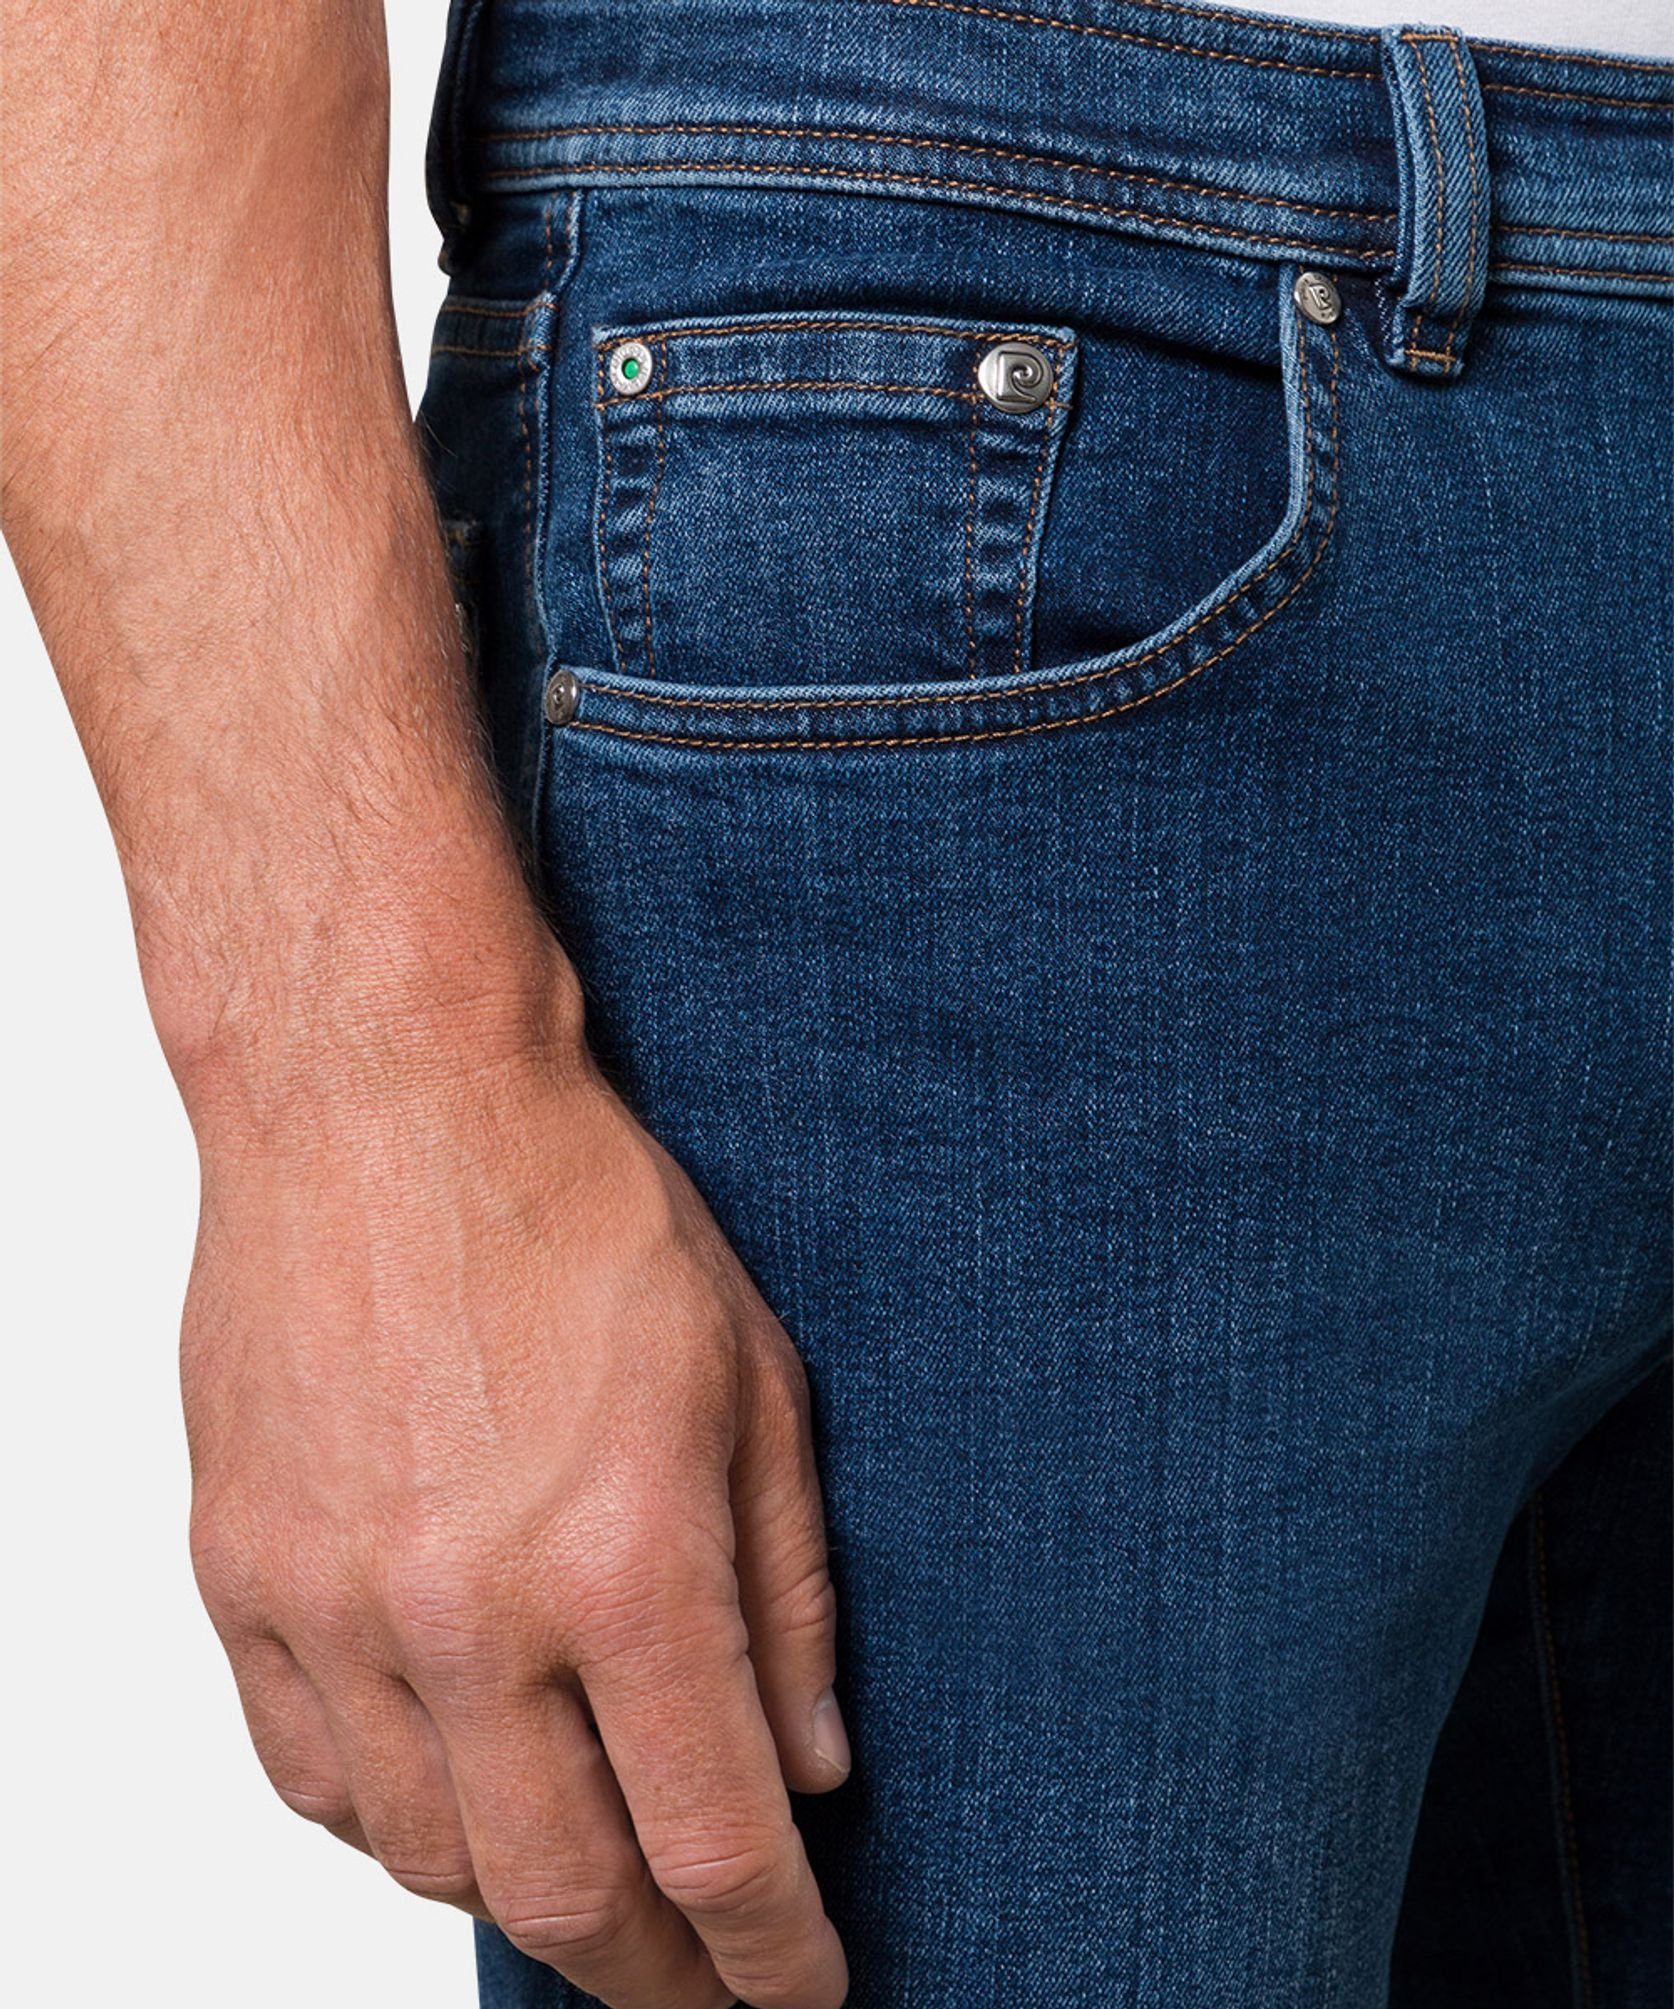 Pierre Cardin 5-Pocket-Jeans C7 32310.7001